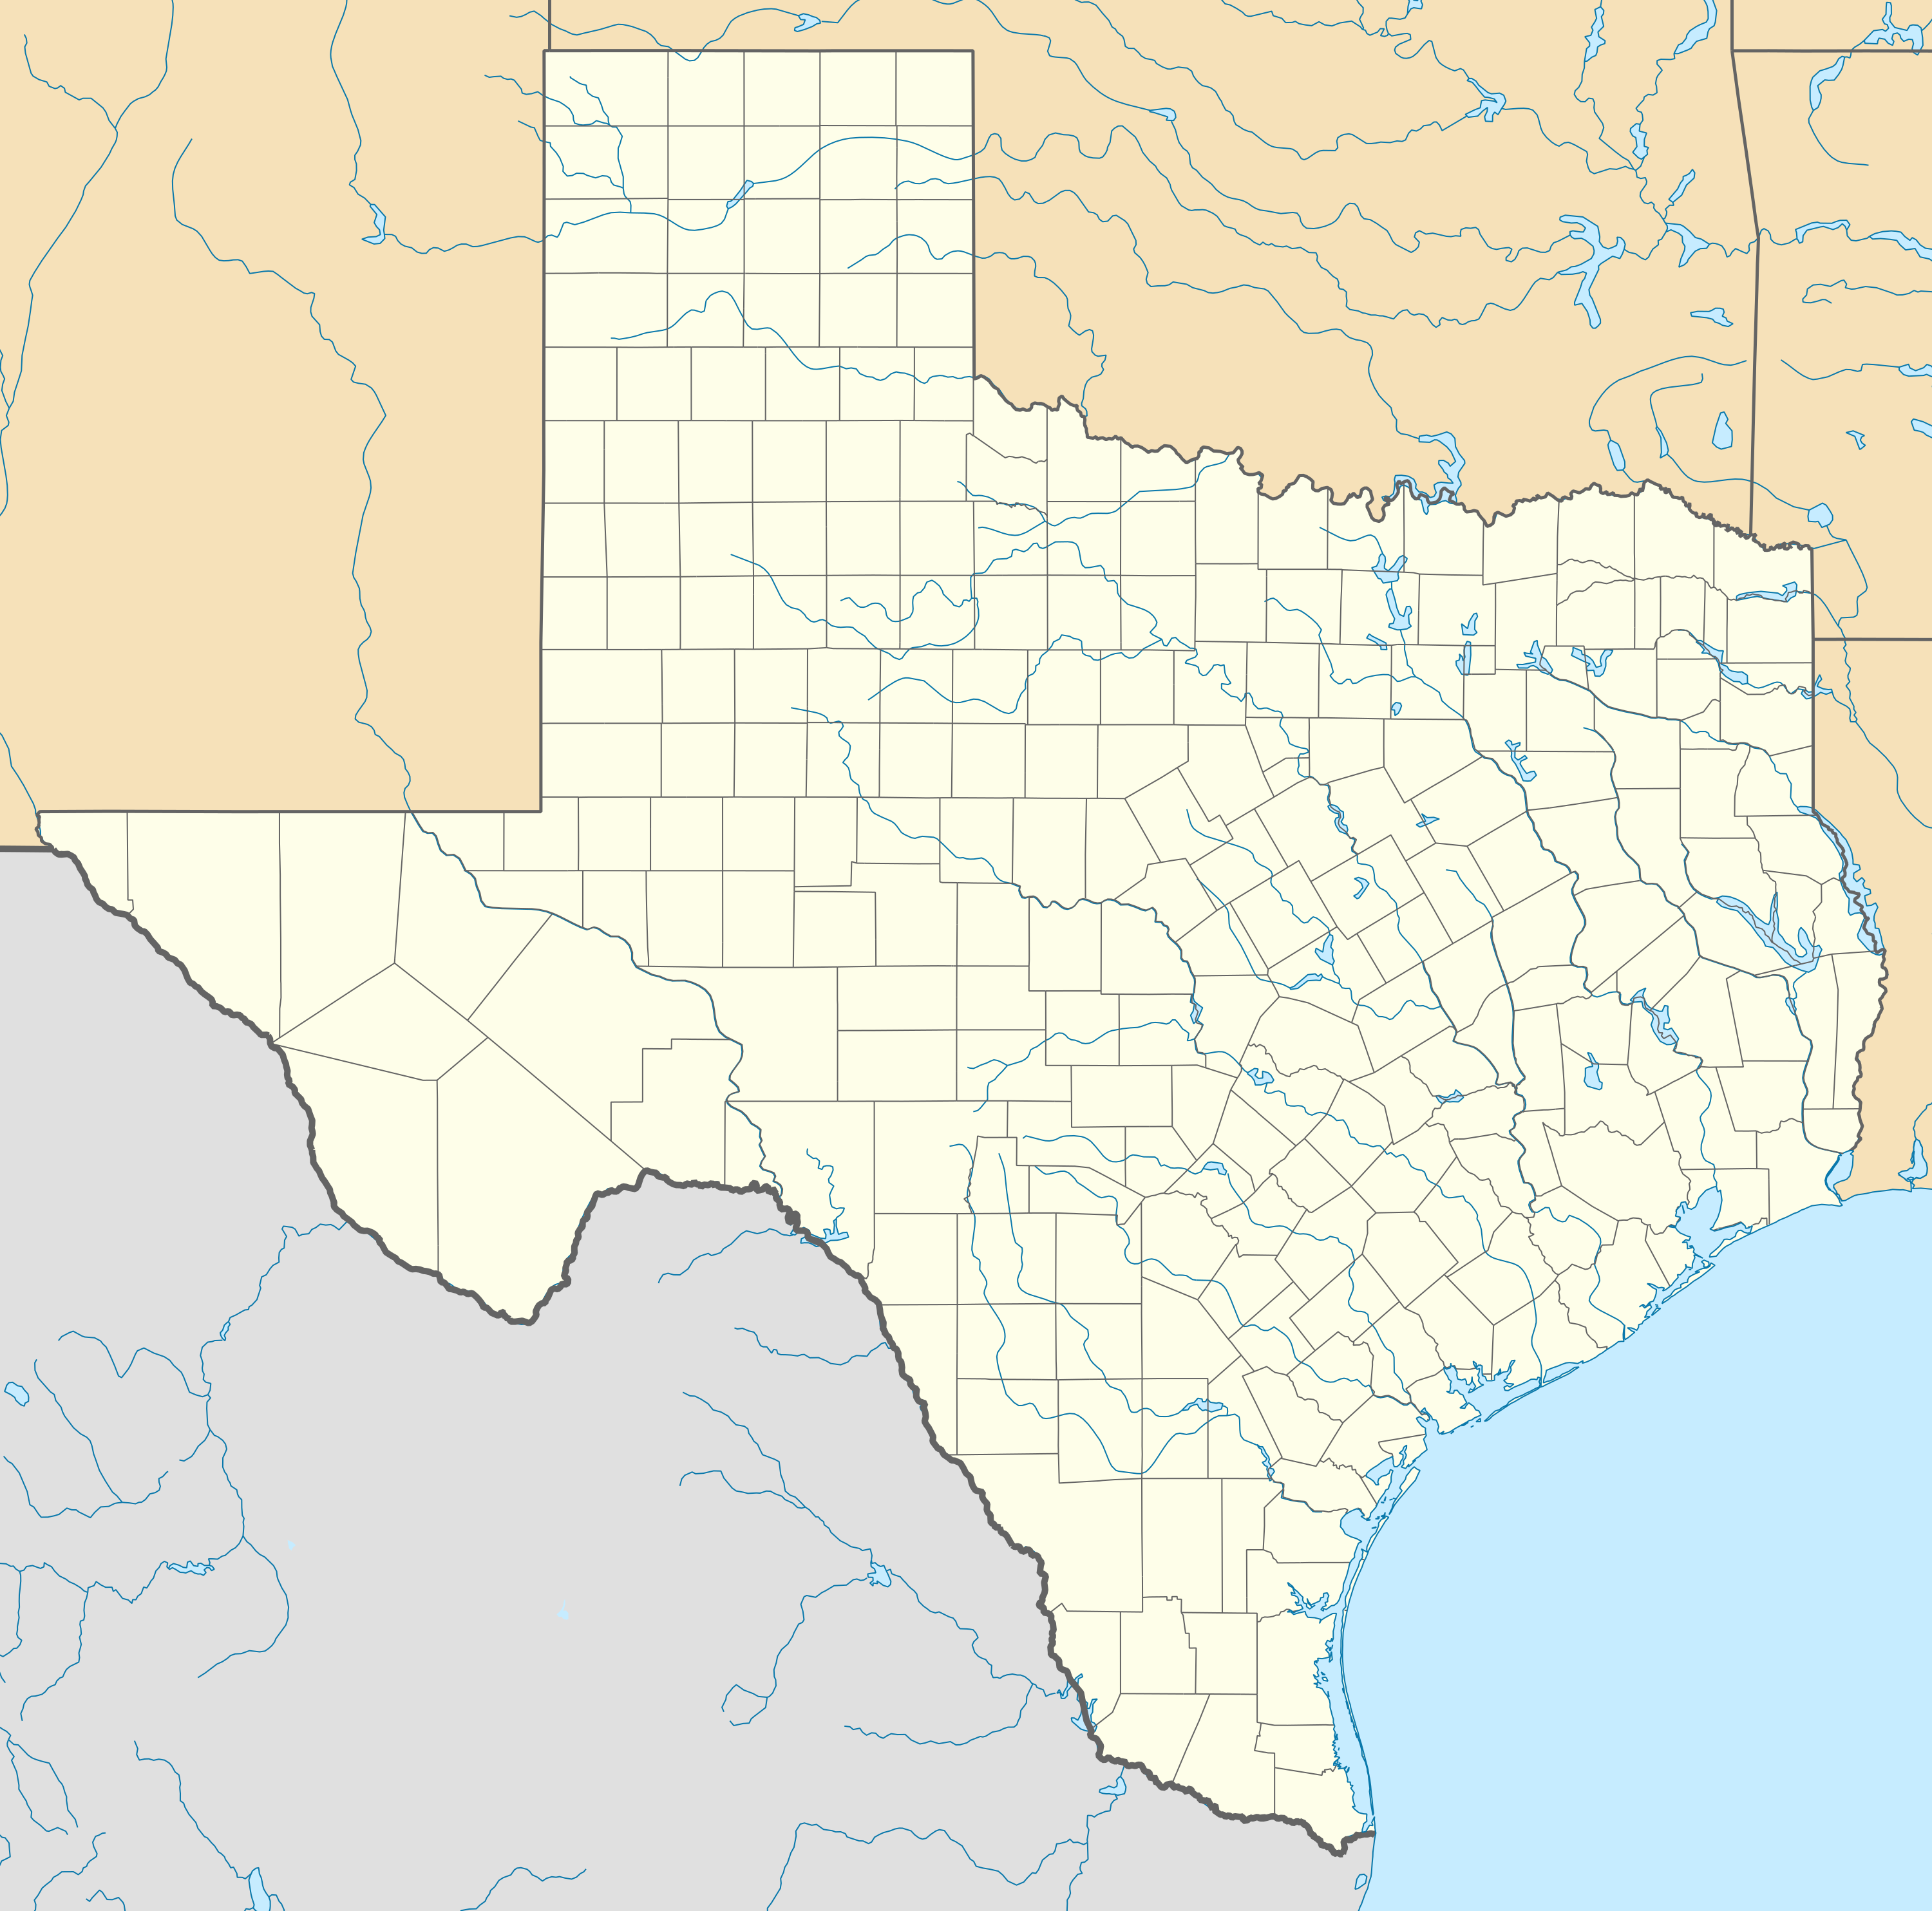 Plazak/sandbox is located in Texas